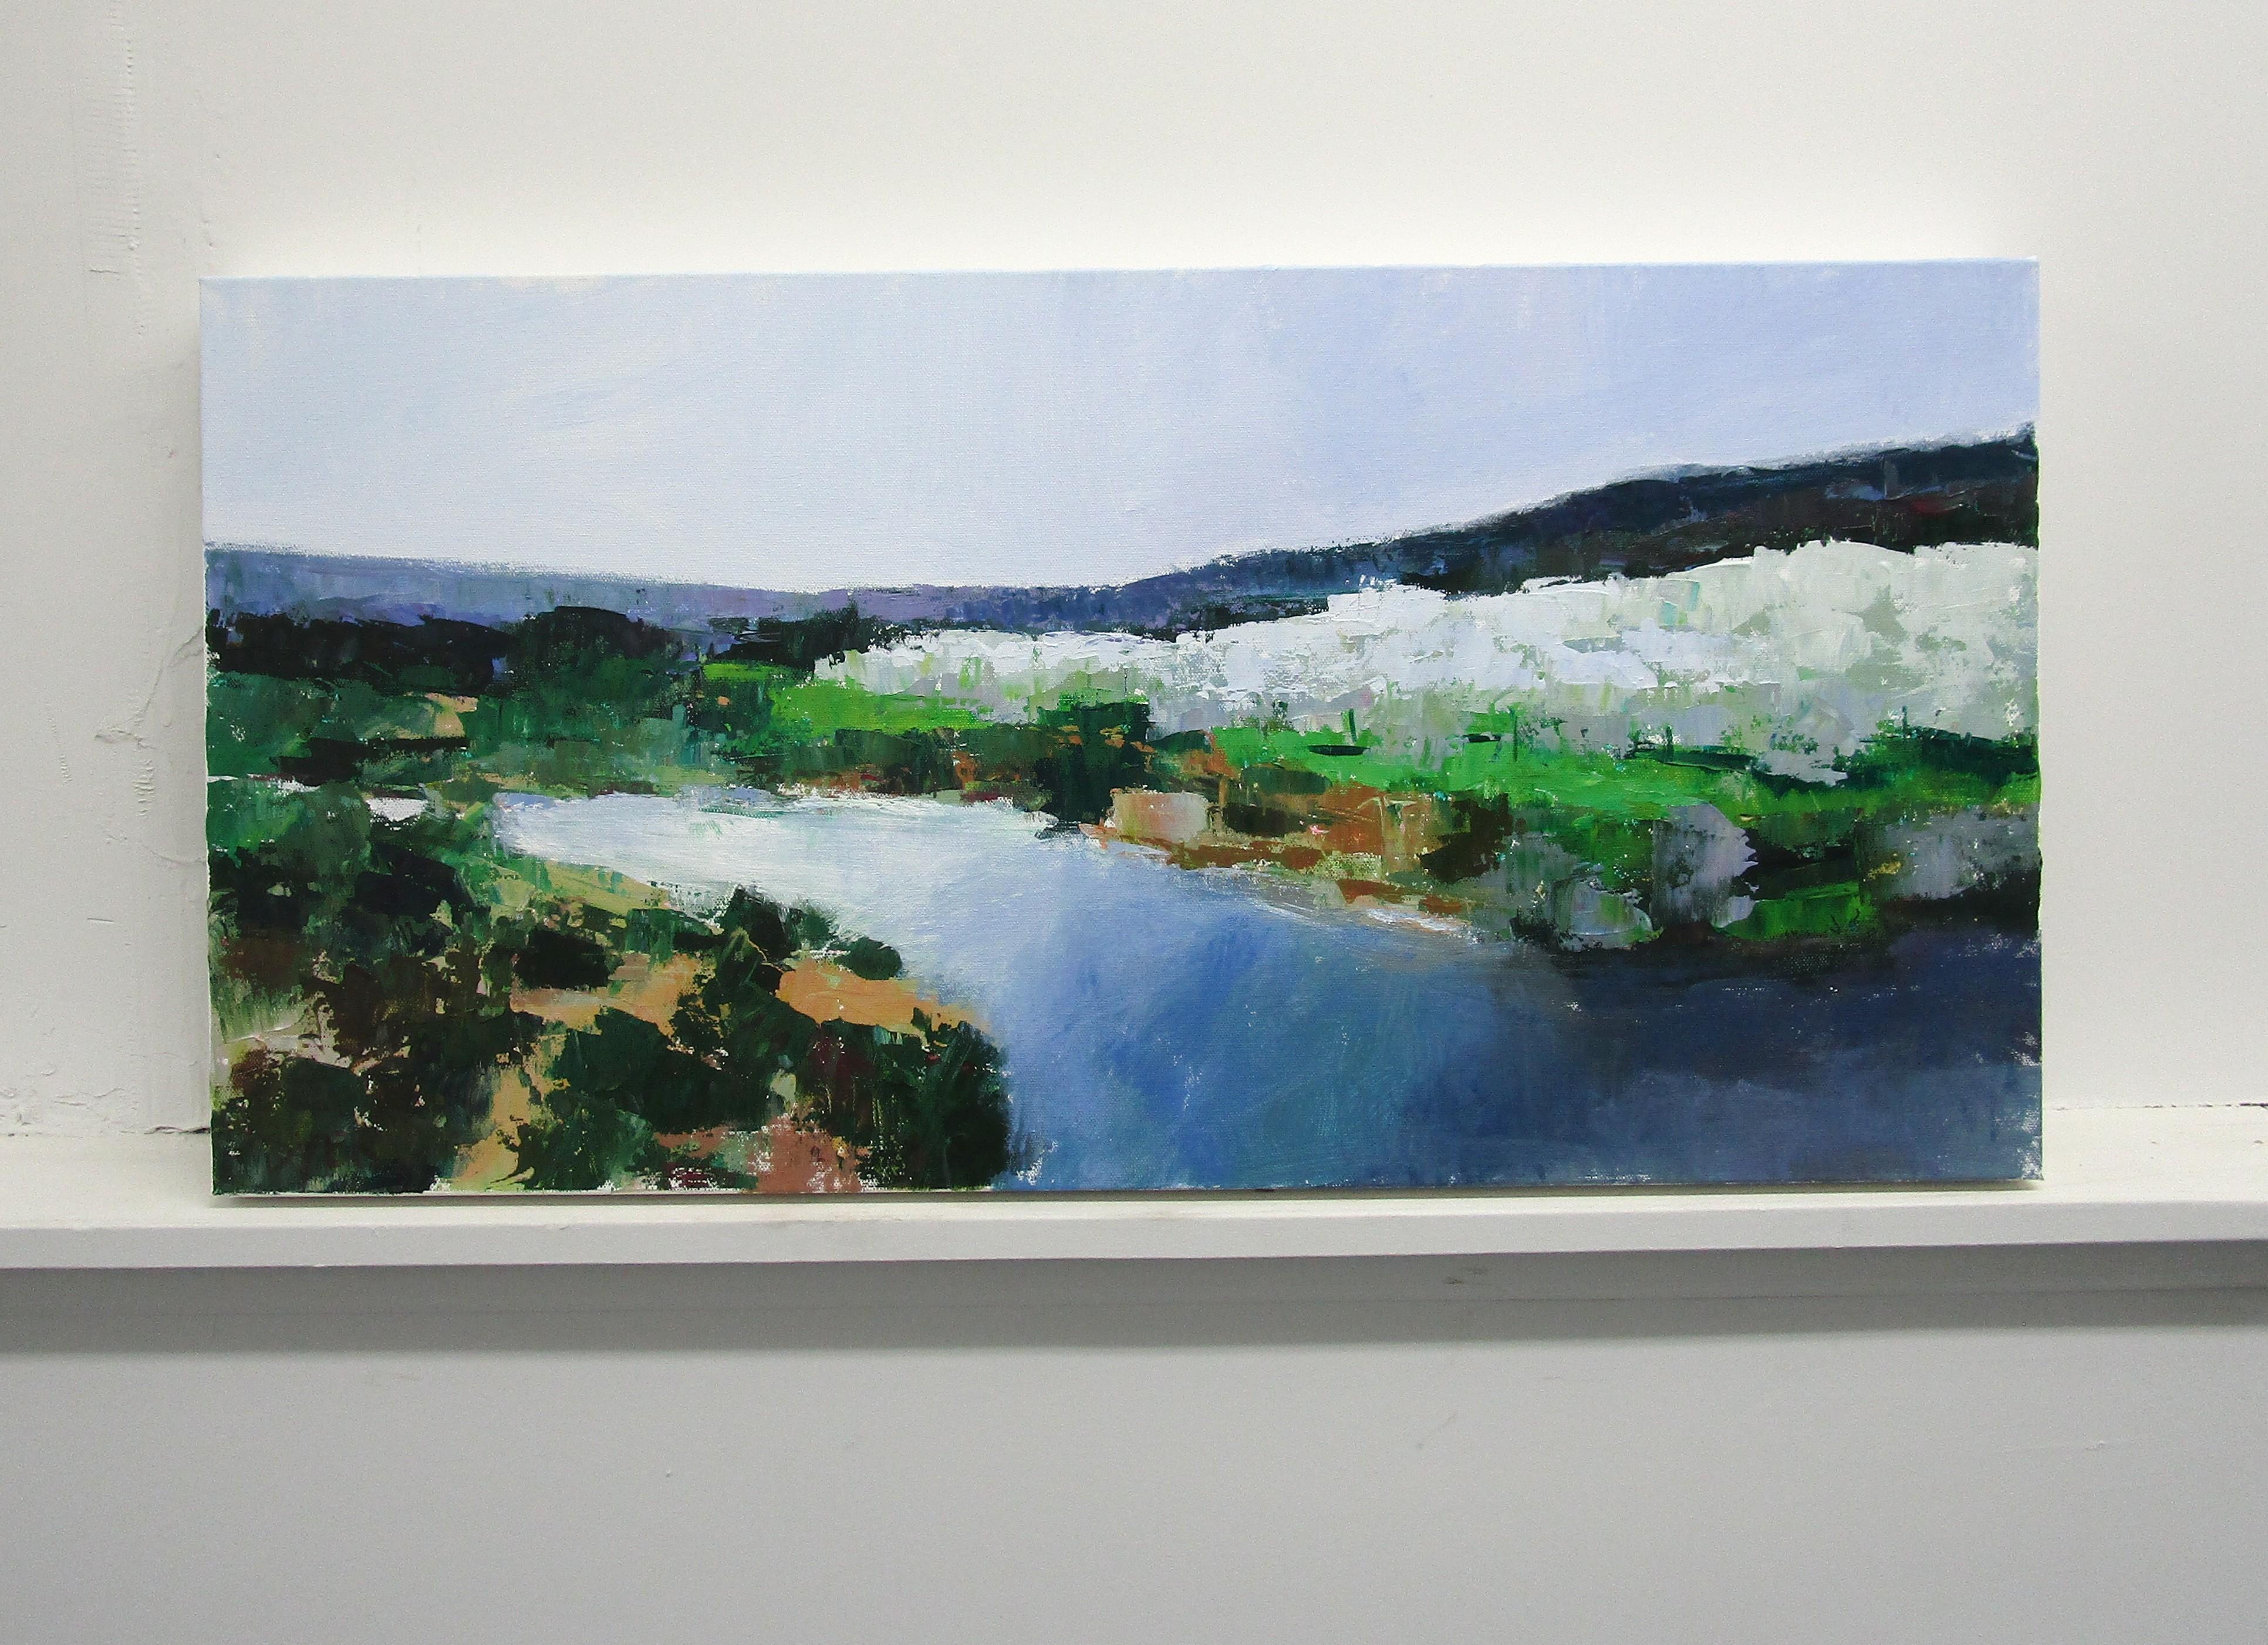 <p>Commentaires de l'artiste<br />Une soirée calme le long d'une rivière en Provence, France, avec vue sur une oliveraie. Le ciel neutre et l'eau bleue froide accentuent le paysage verdoyant. Un grand nombre de détails suggérés avec une économie de